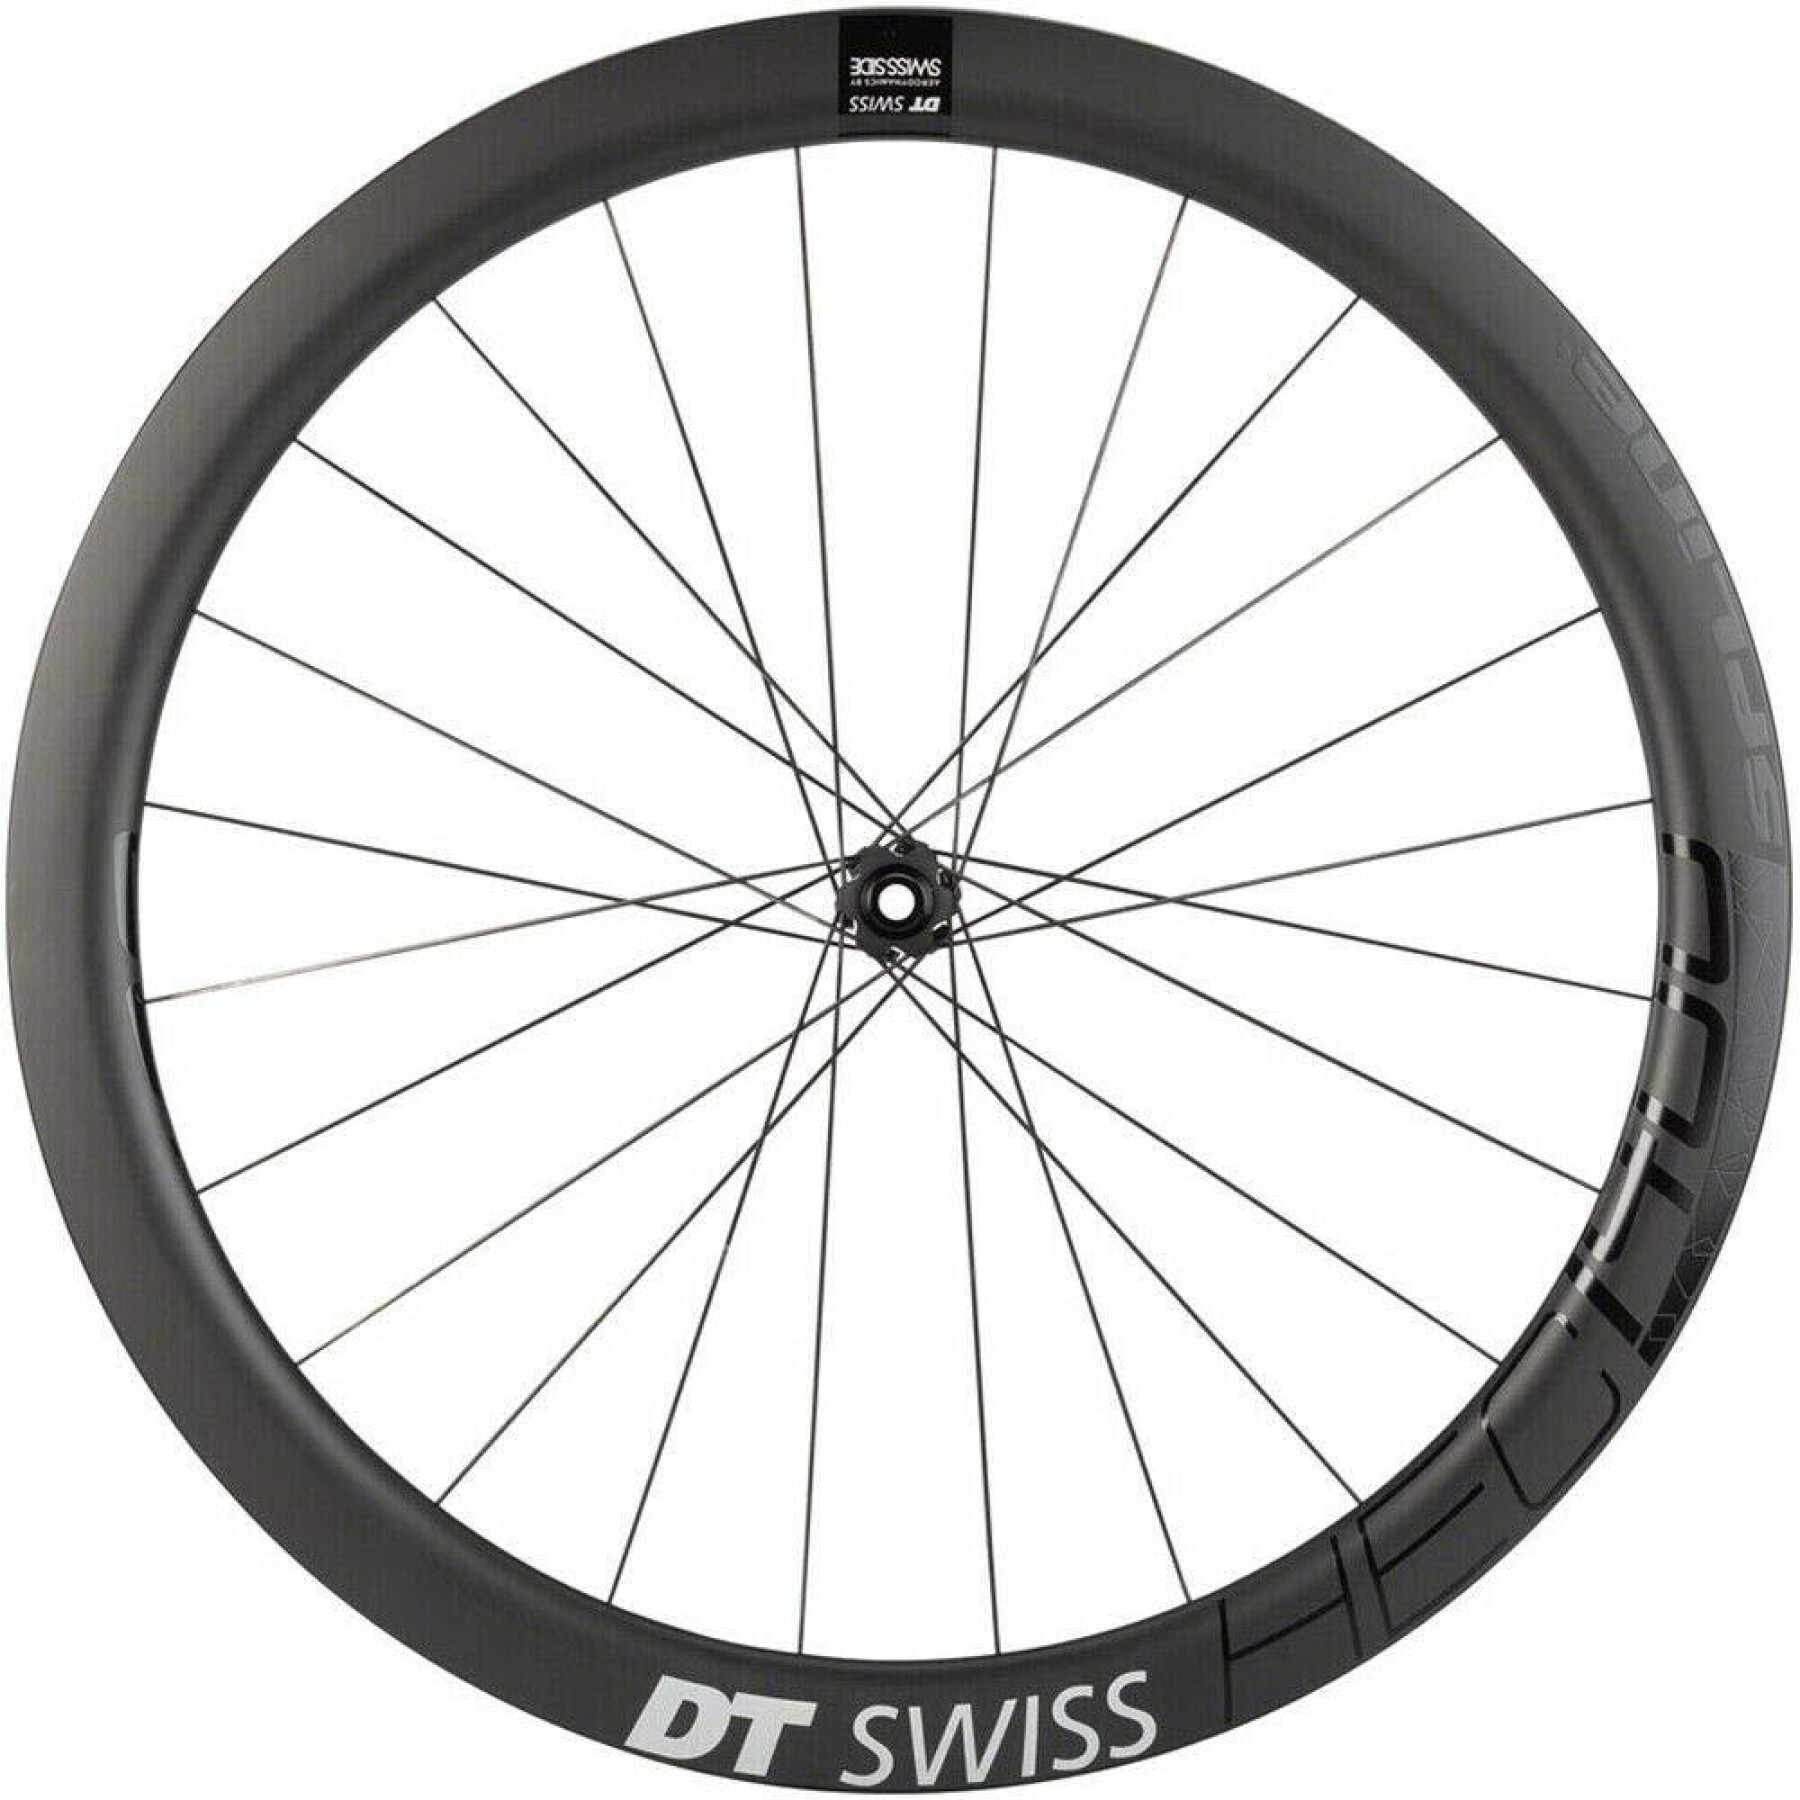 Ruota anteriore della bicicletta DT Swiss Hec 1400 Spline 19 Cl Disc Tubeless